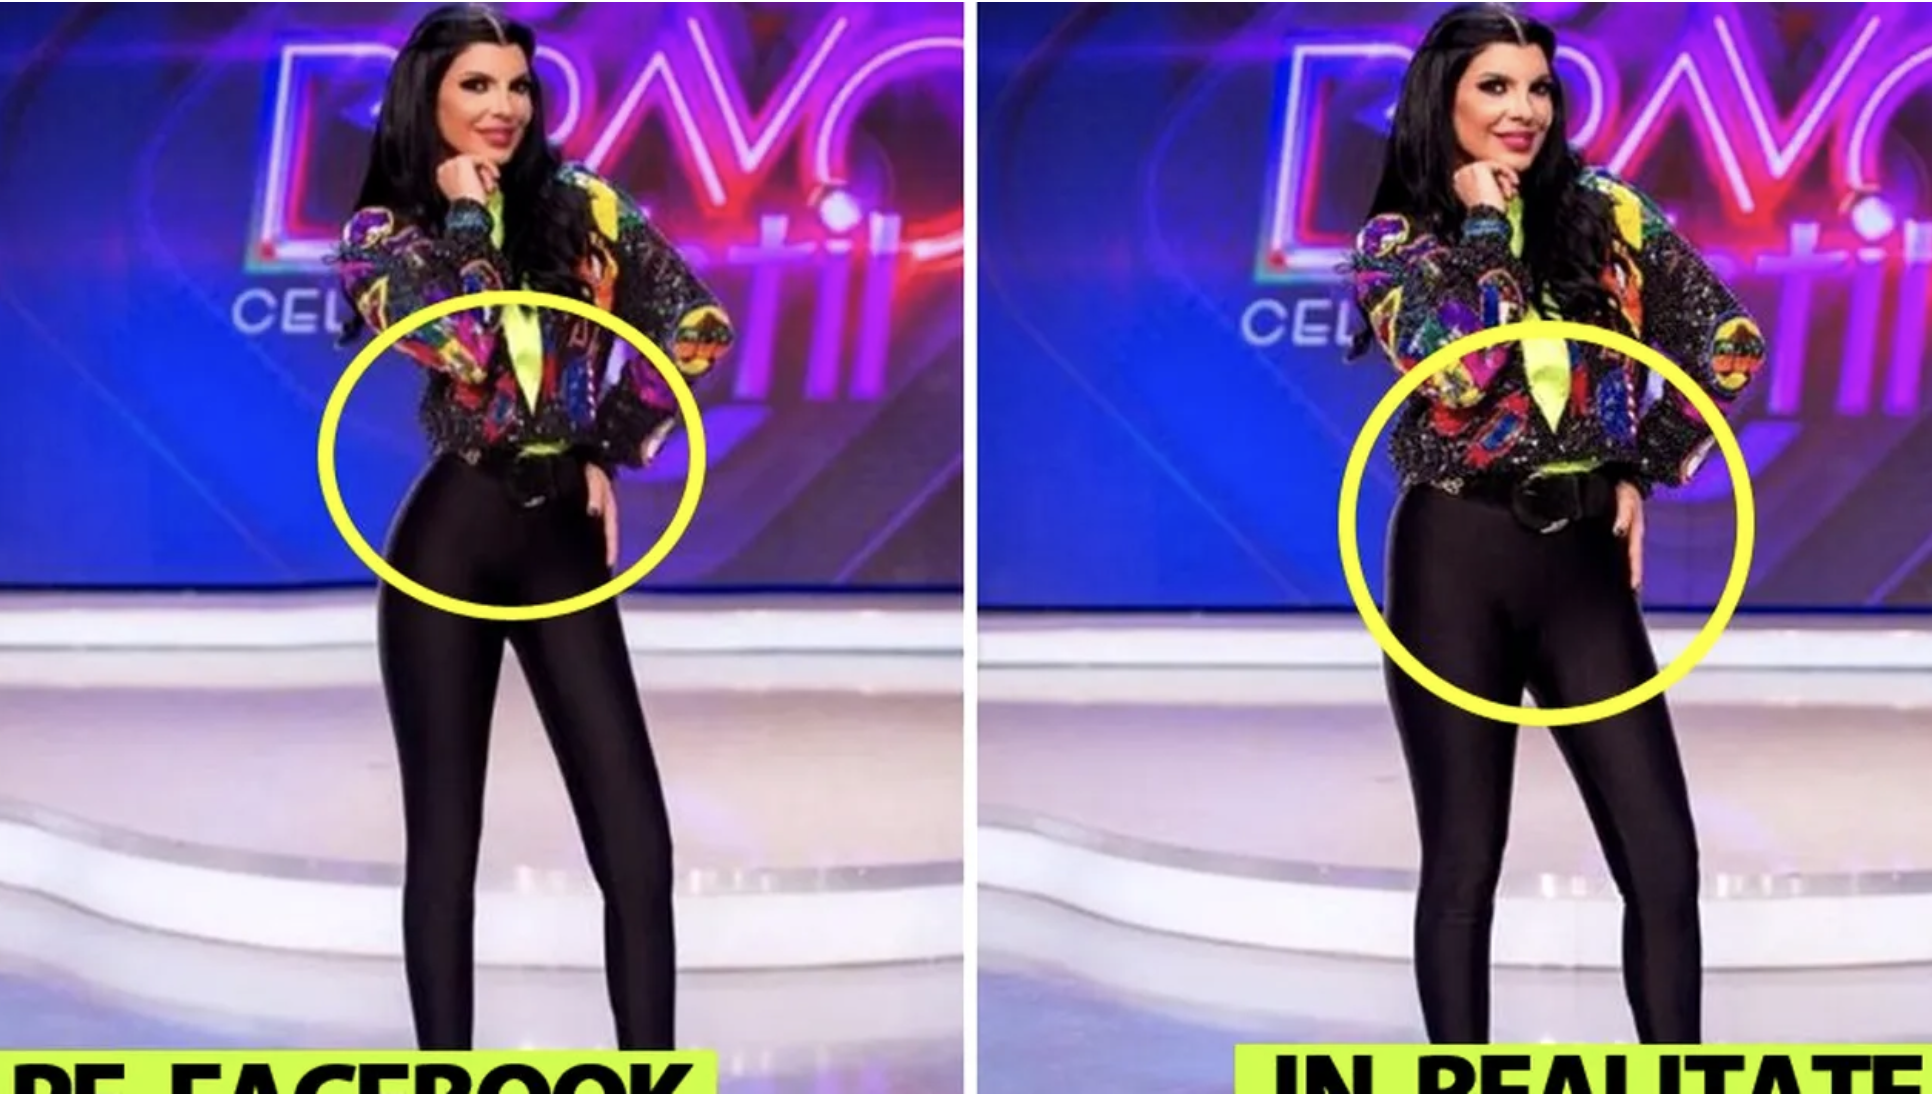 Andreea Tonciu, in studioul Bravo, ai stil! Celebrities, înainte şi după ce şi-a editat corpul. Sursa foto: Facebook